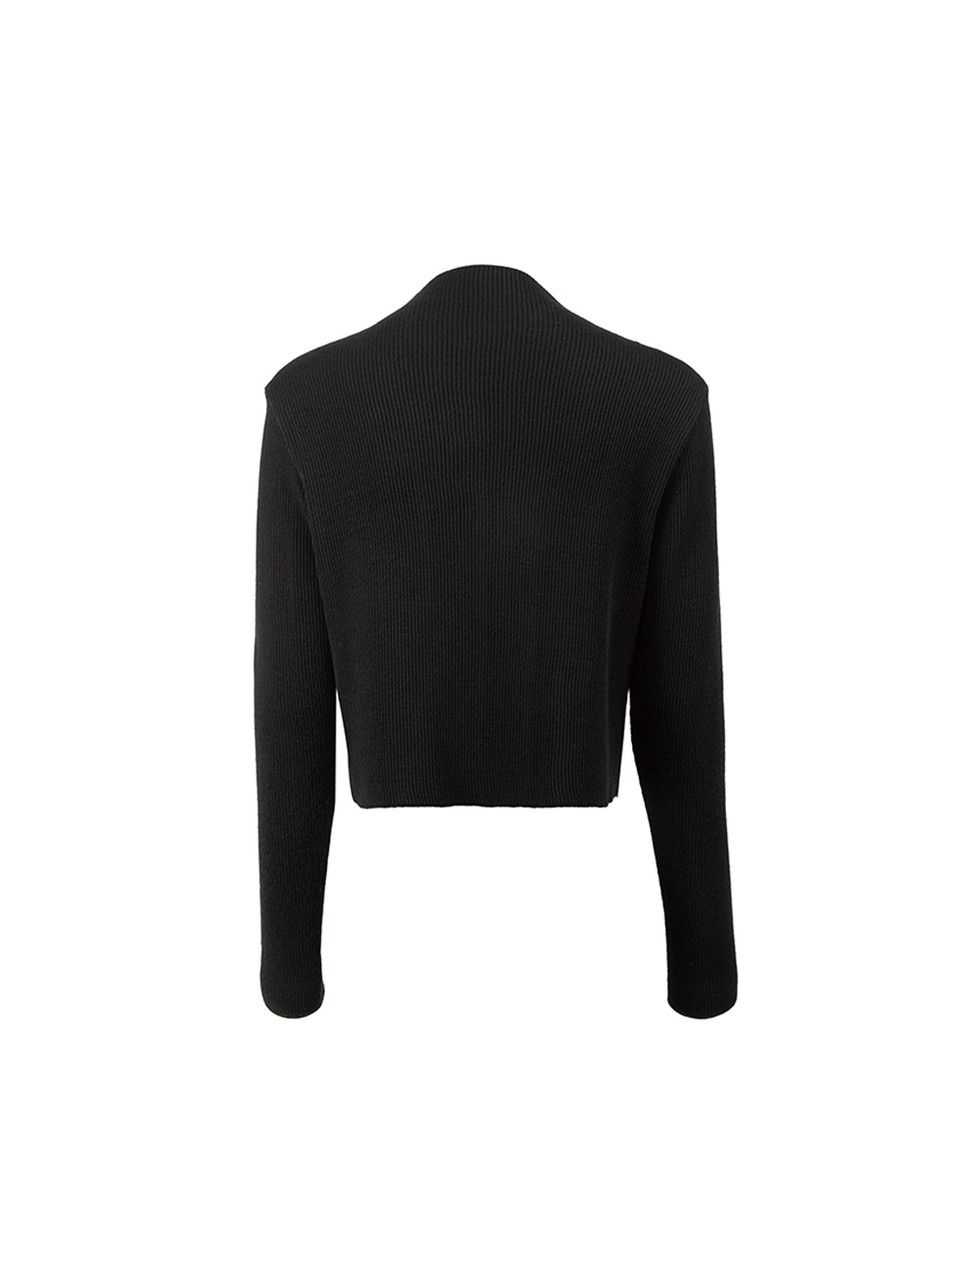 Yohji Yamamoto Black Knit Panel Cropped Jacket